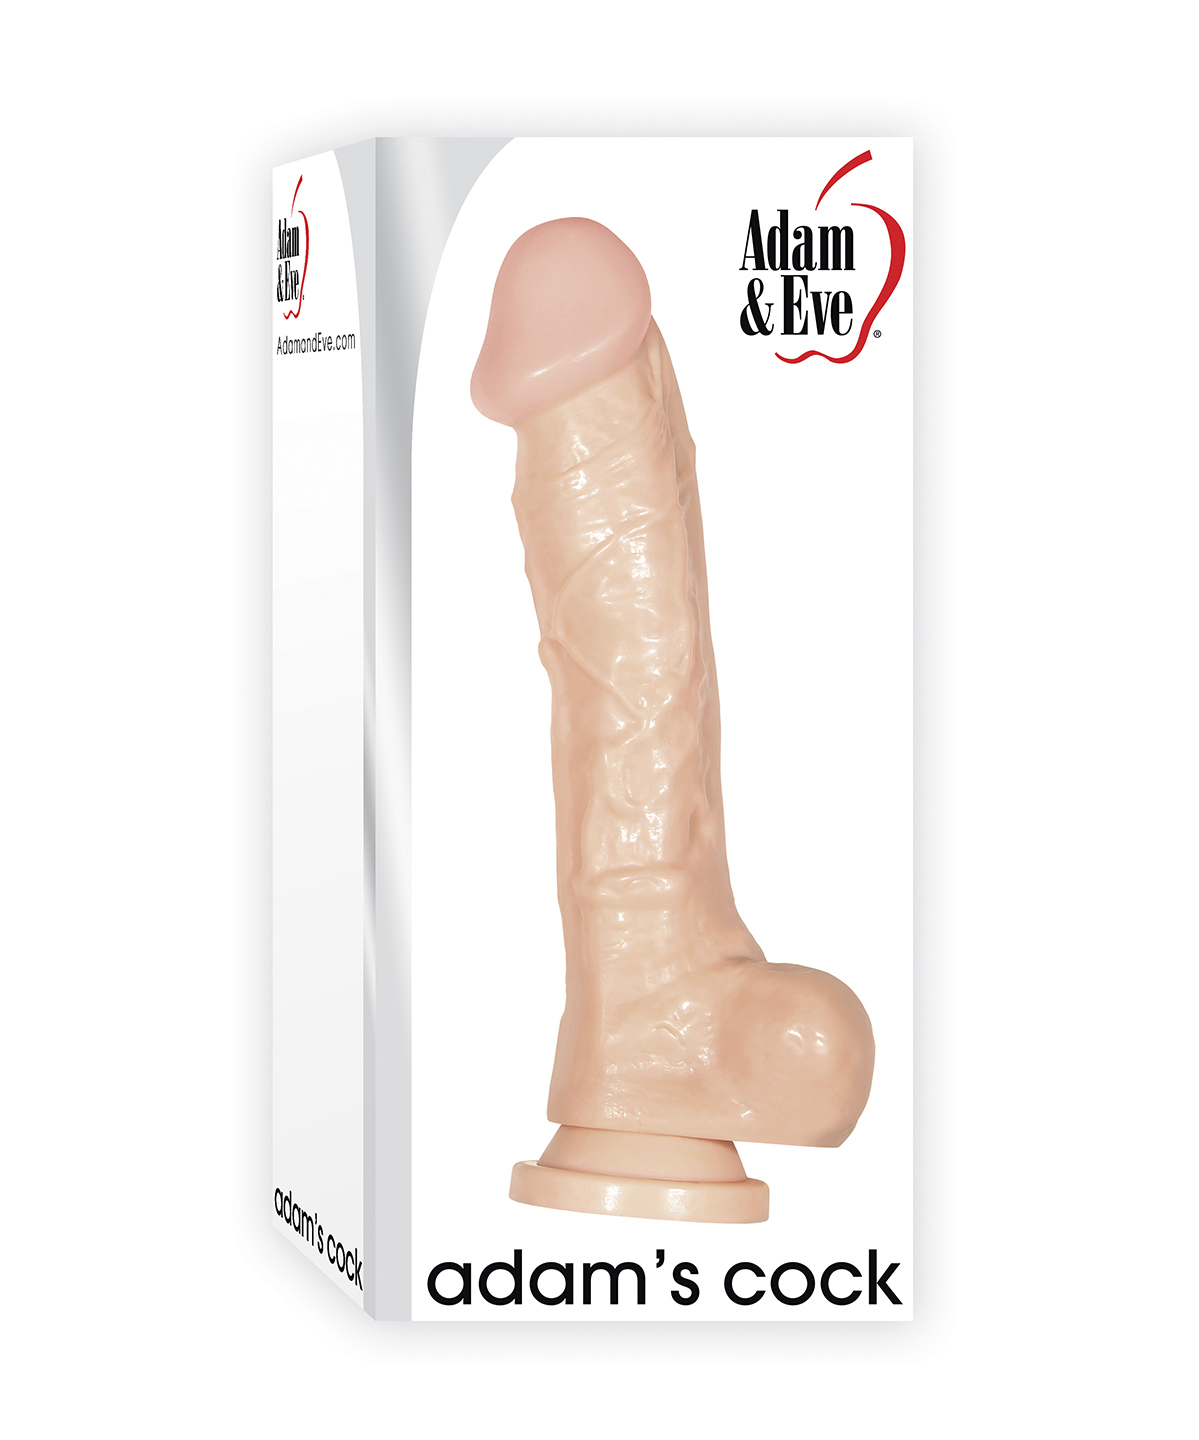 Adams-cock-front.jpg